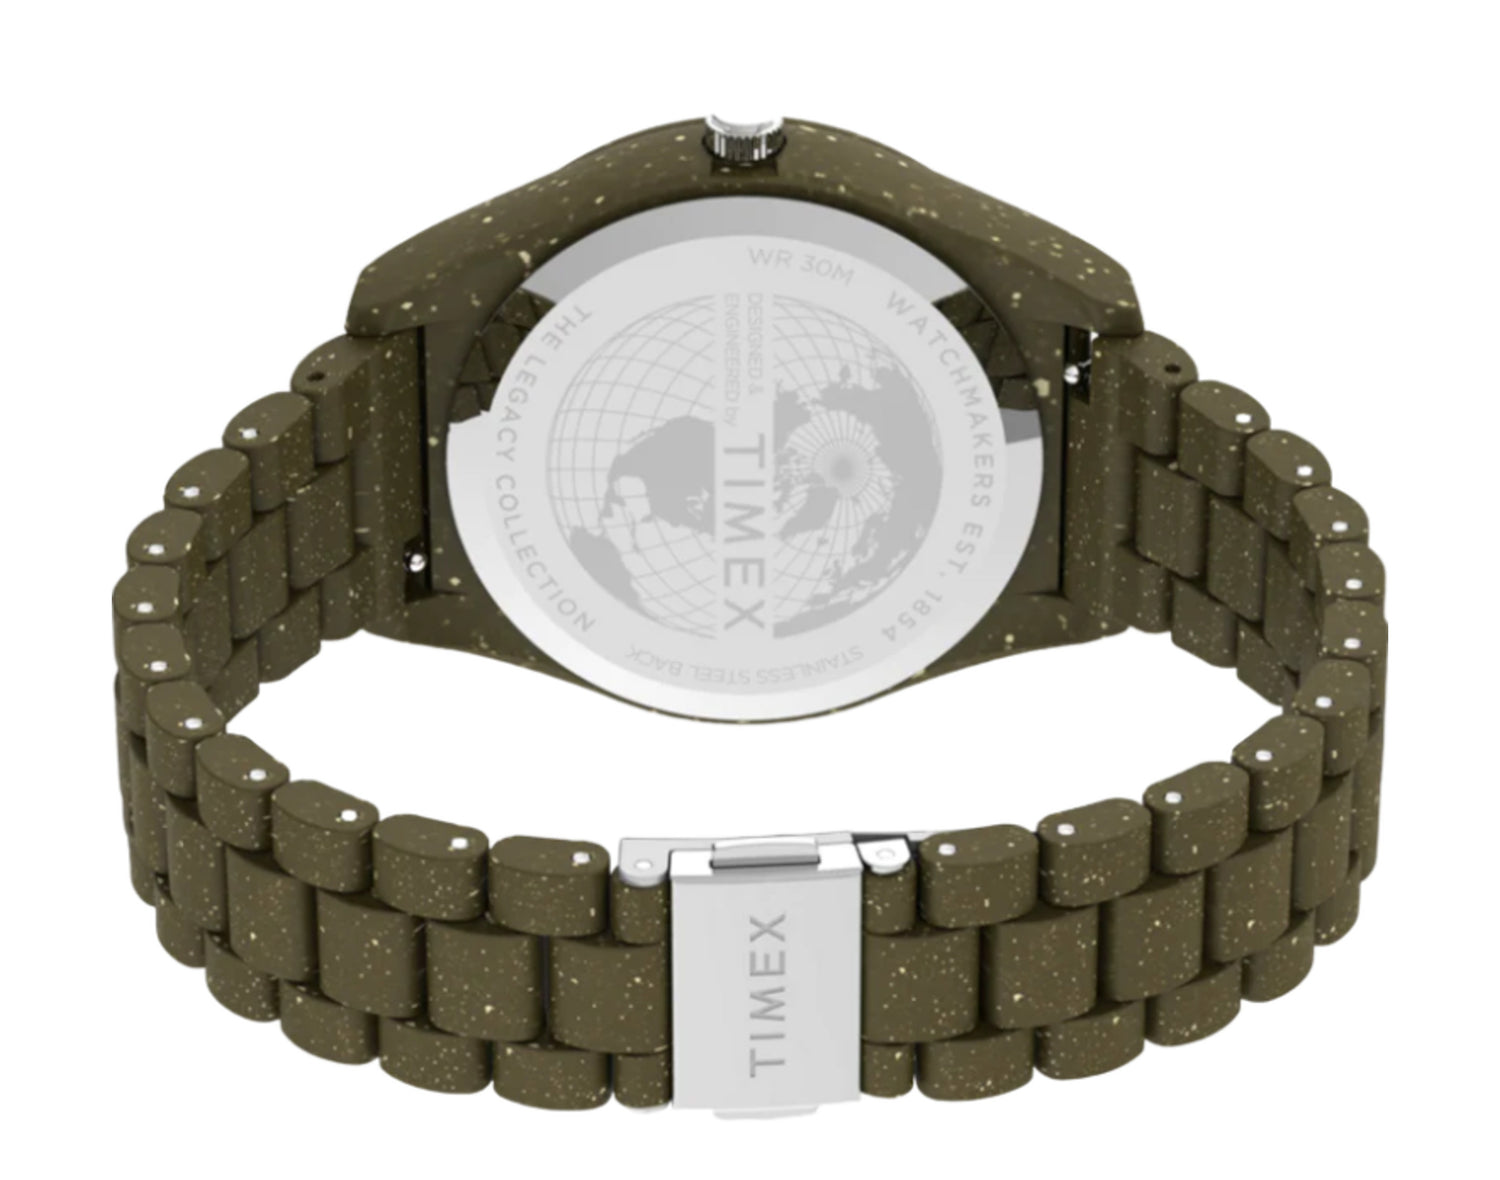 Timex Waterbury Legacy Ocean 42mm Recycled Plastic Bracelet Watch